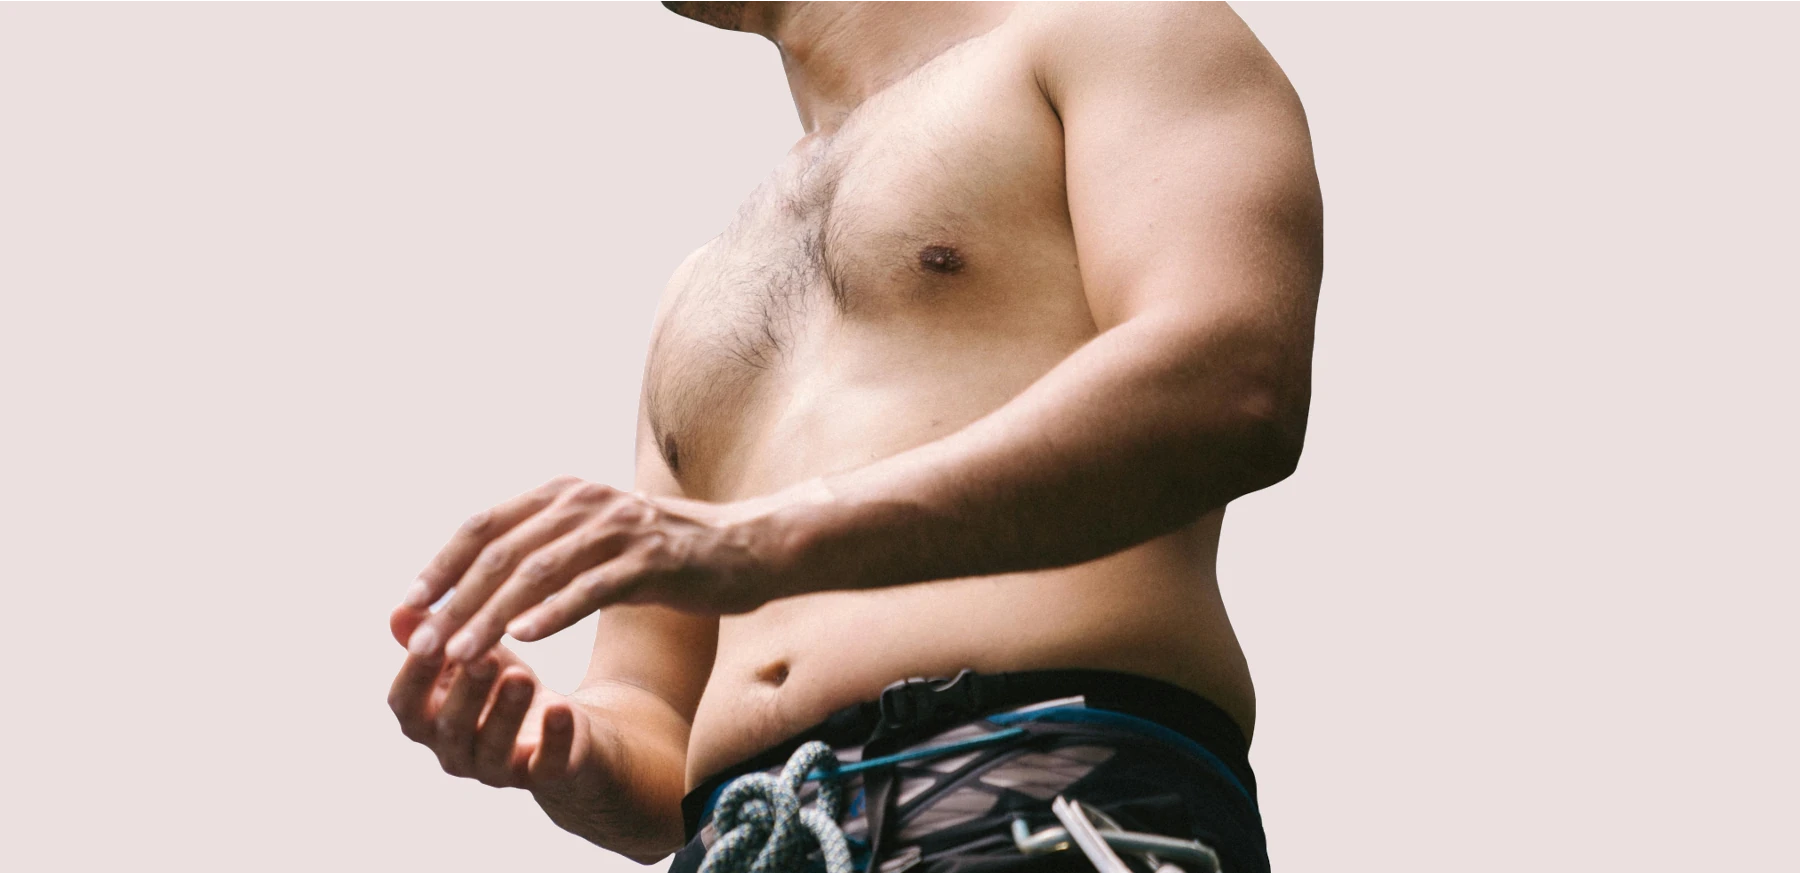 ¿Cómo reducir la barriga en hombres?